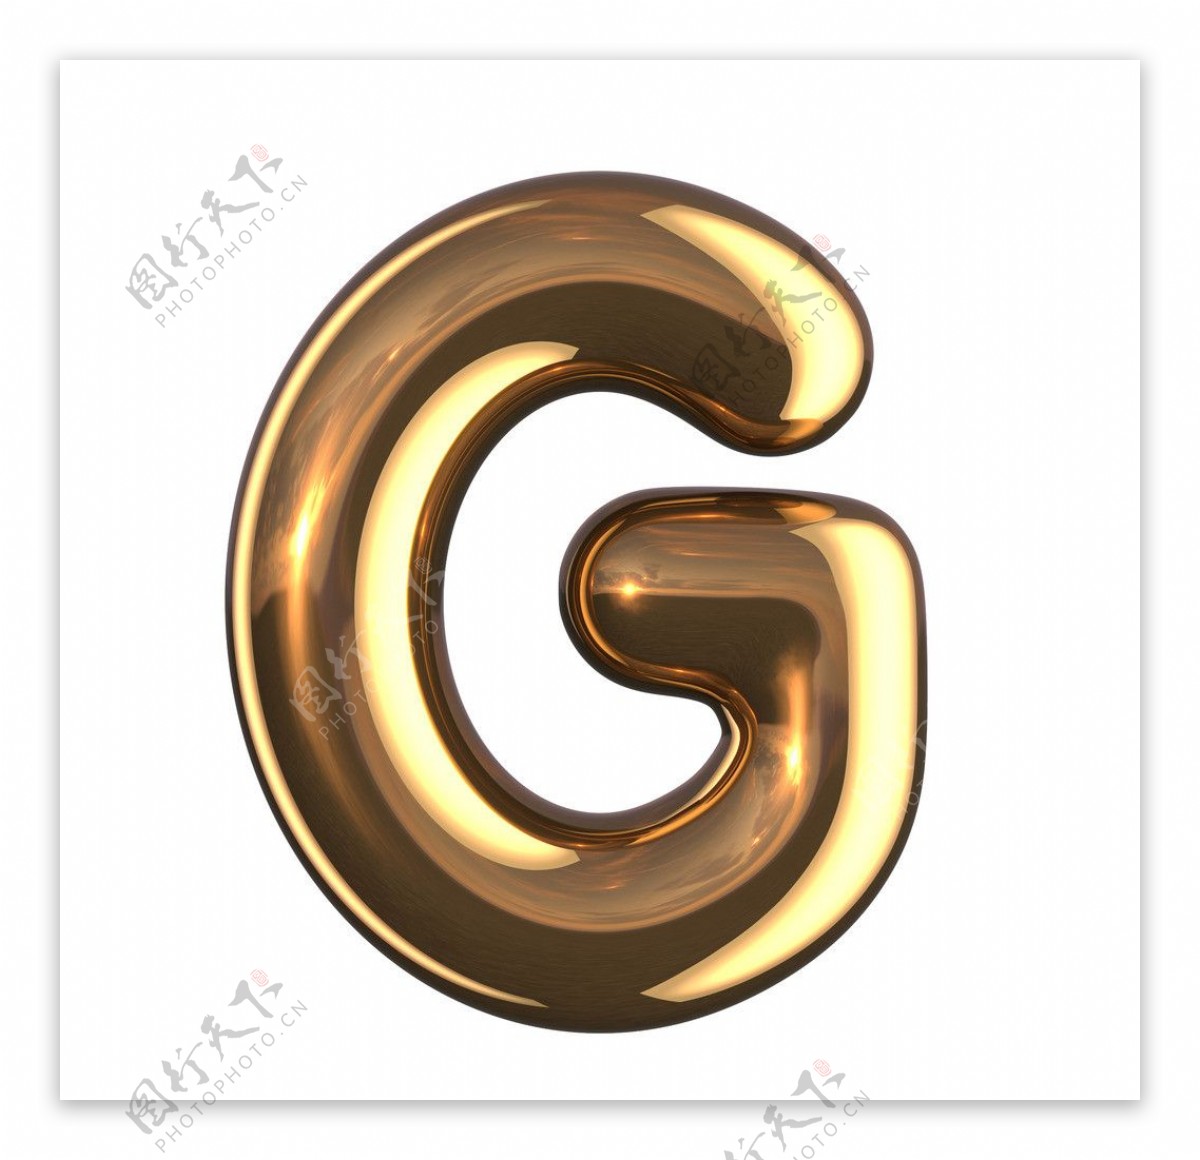 金属字母G图片